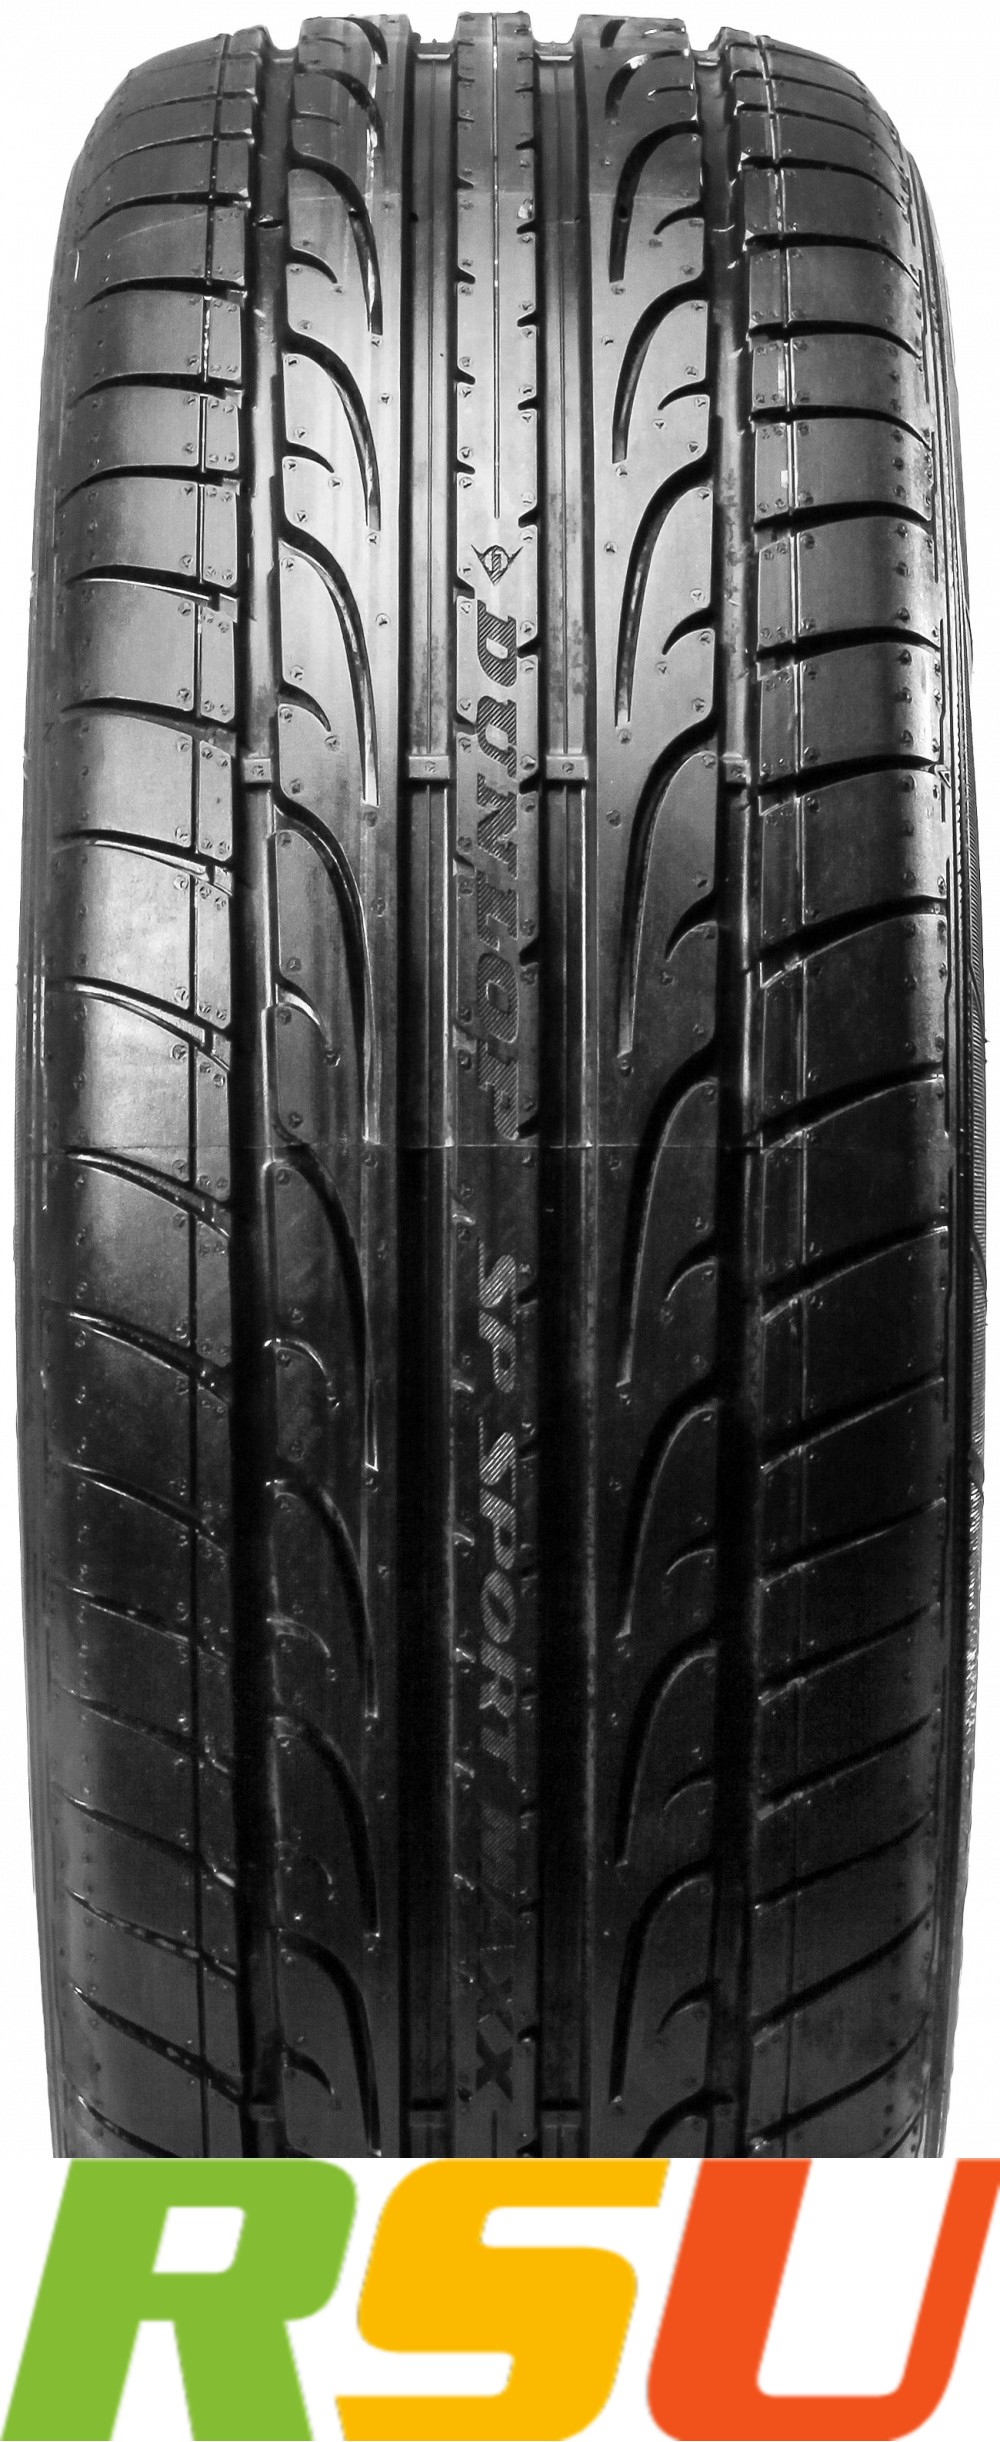 2x Dunlop SP Sport Maxx XL DOT19 265/35 R18 97 (Z)Y Sommerreifen  4038526234292 | eBay